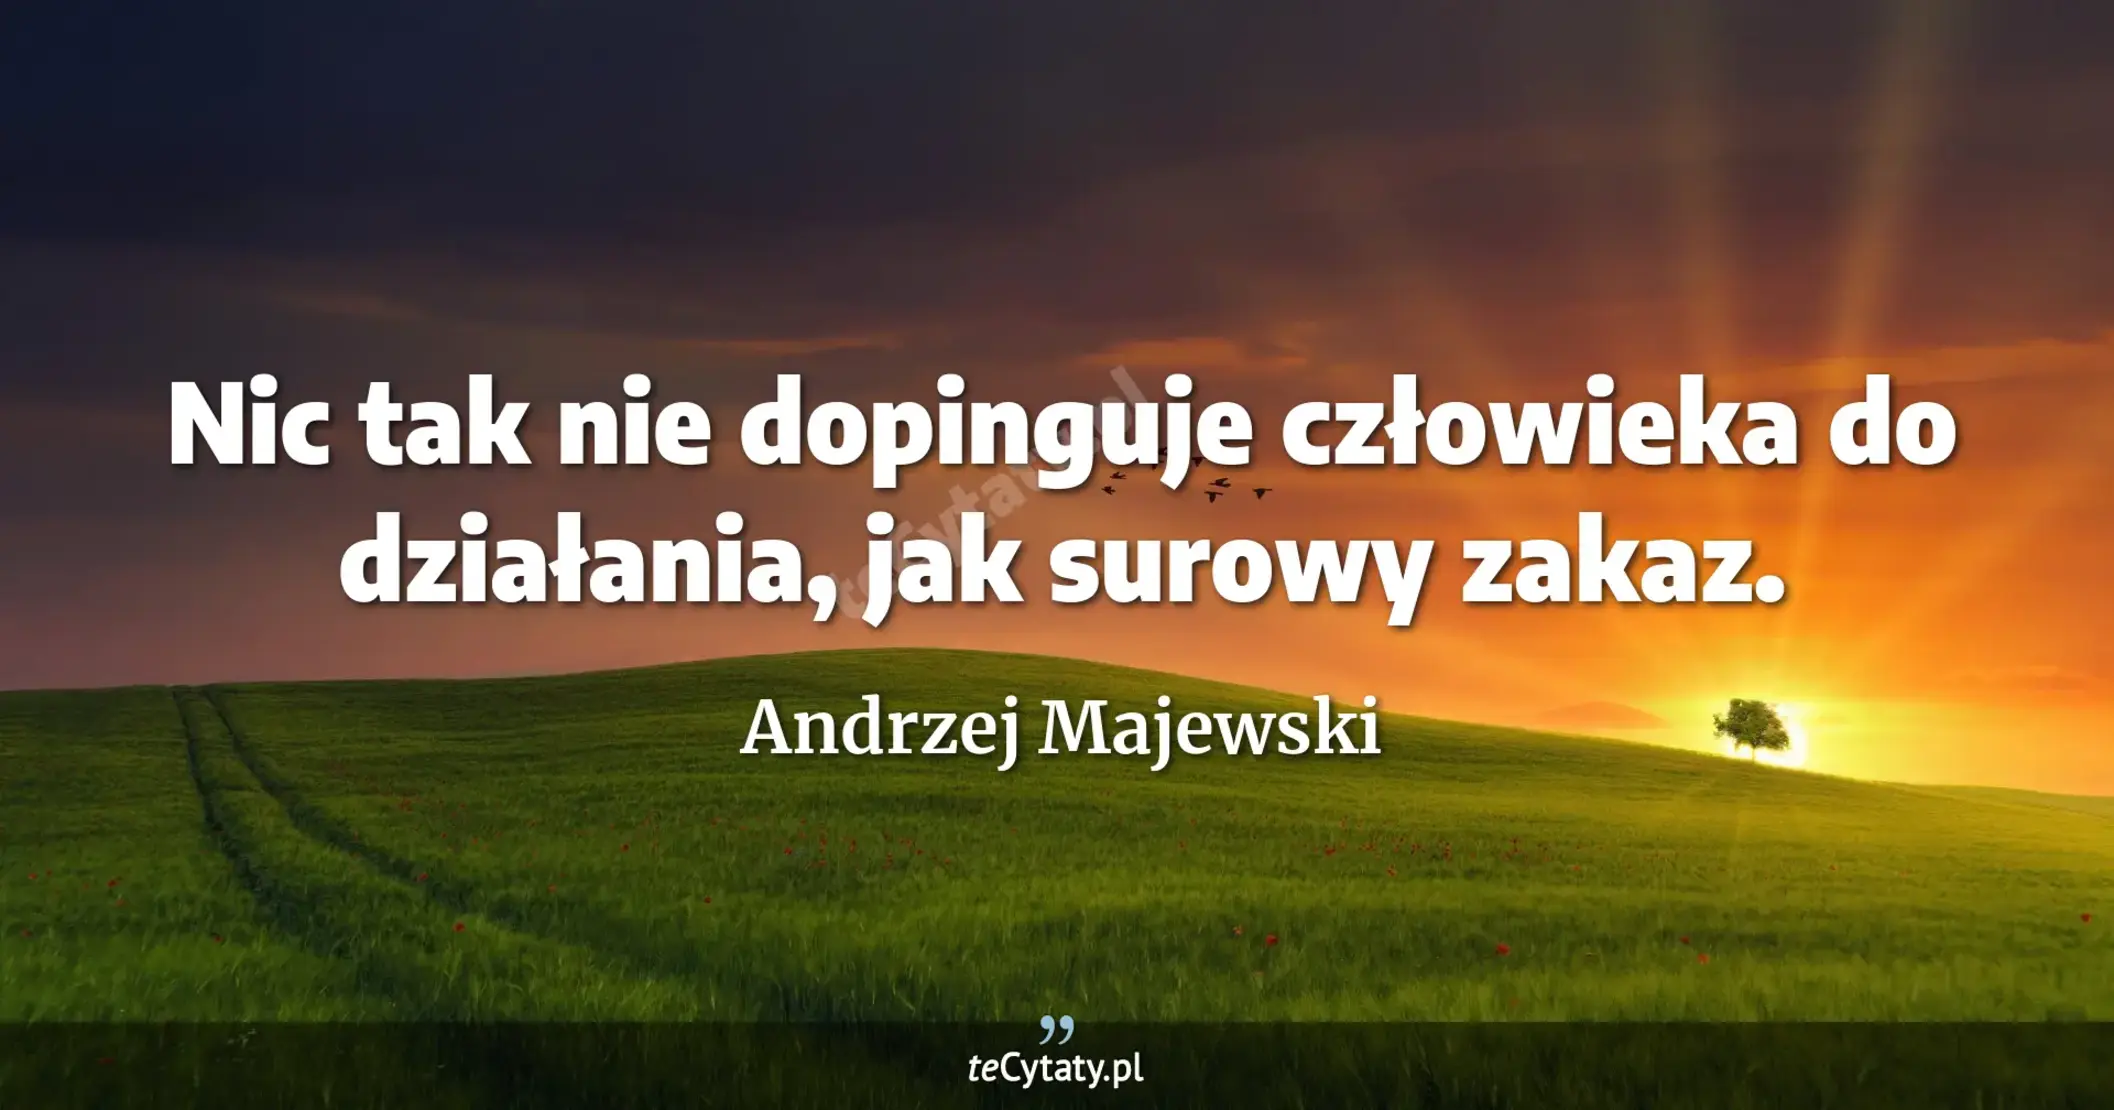 Nic tak nie dopinguje człowieka do działania, jak surowy zakaz. - Andrzej Majewski